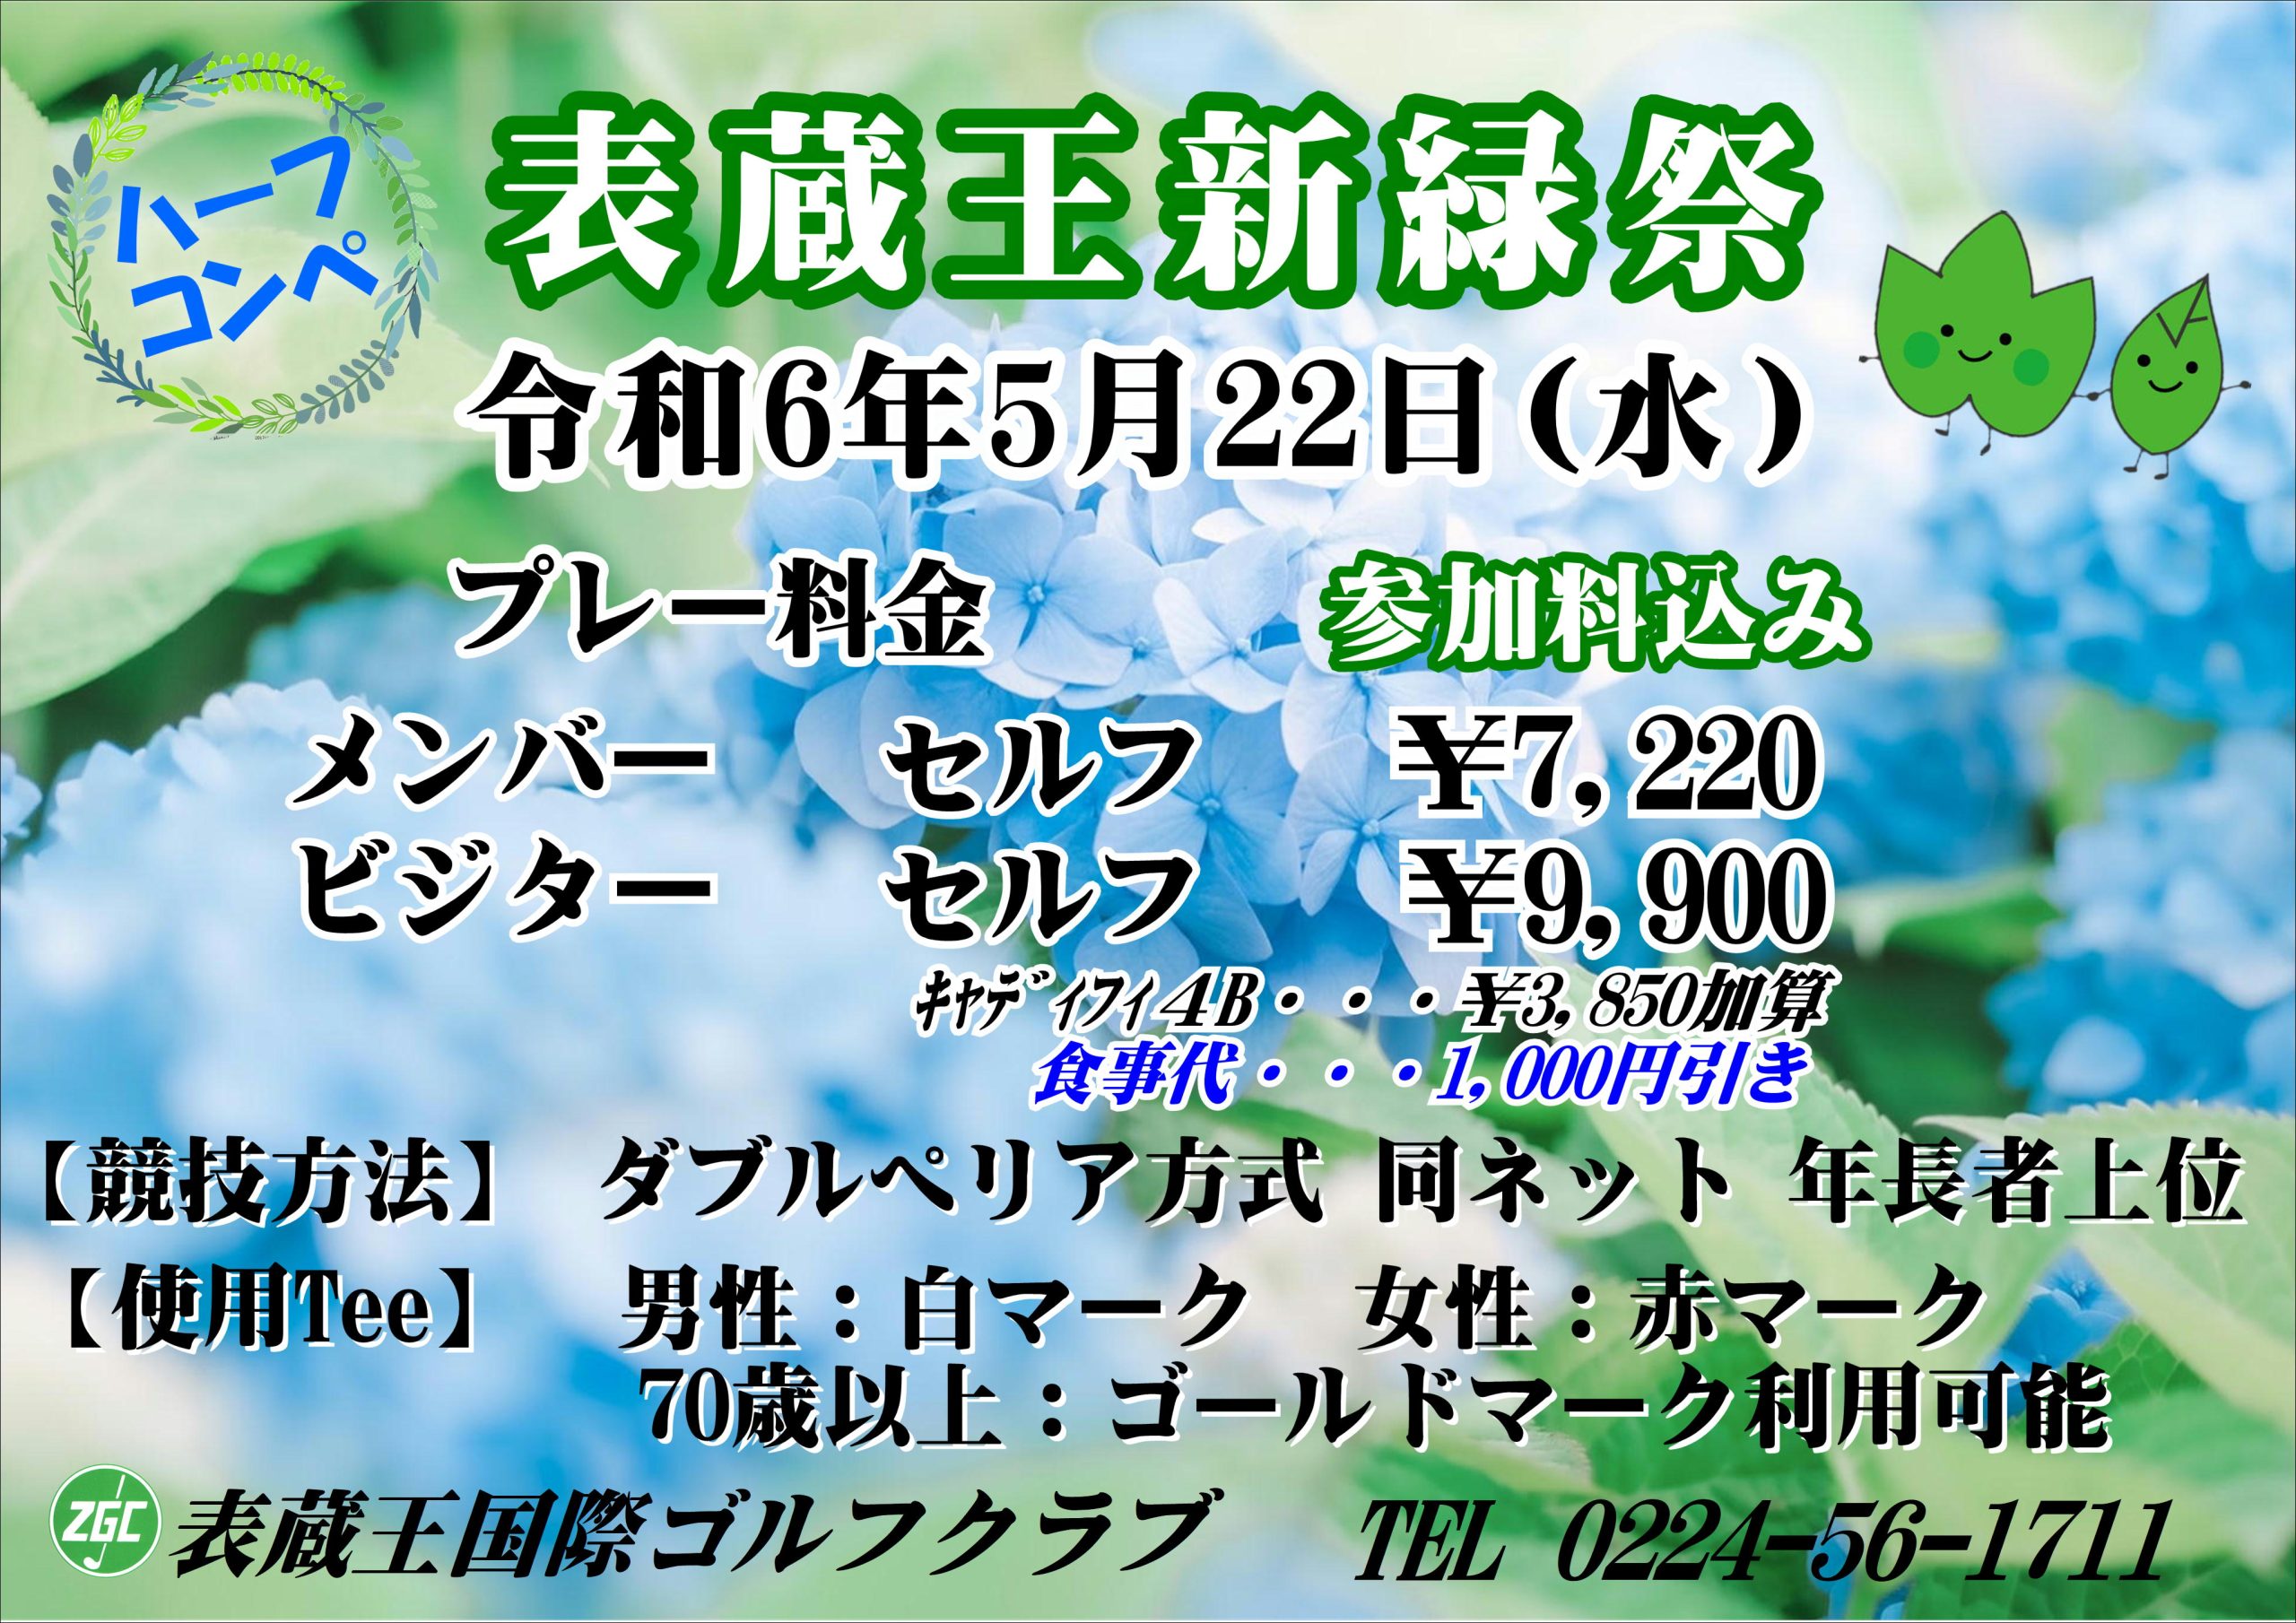 「表蔵王新緑祭」開催のお知らせ